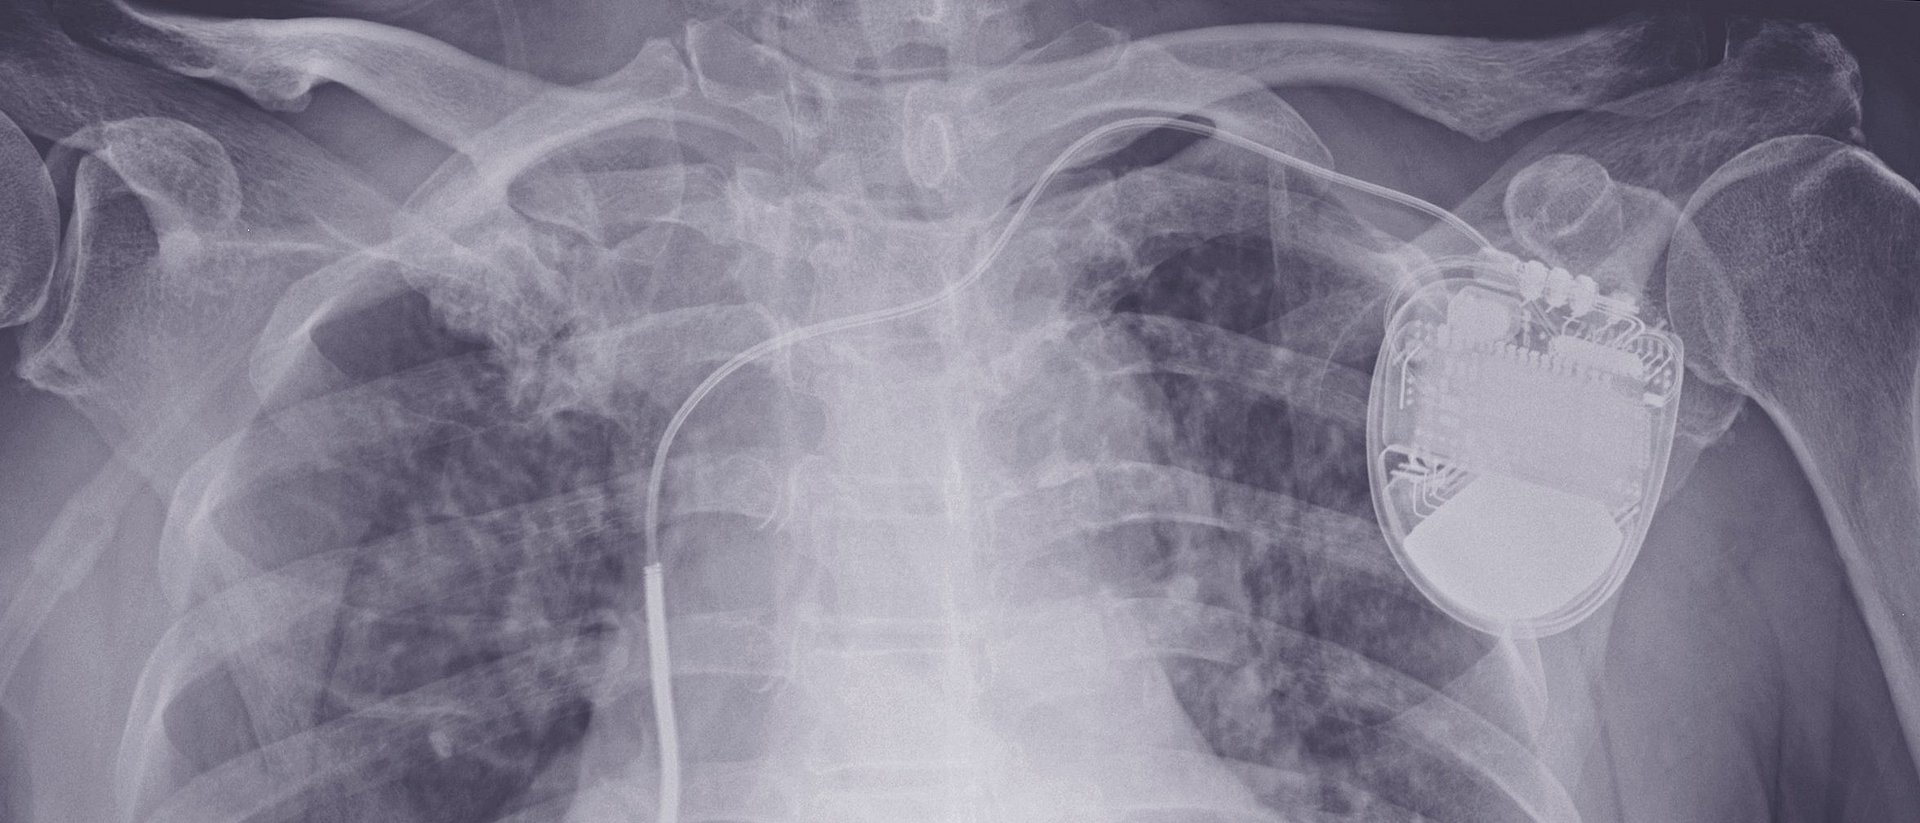 Röntgenbild eines Patienten mit implantiertem Defibrillator.